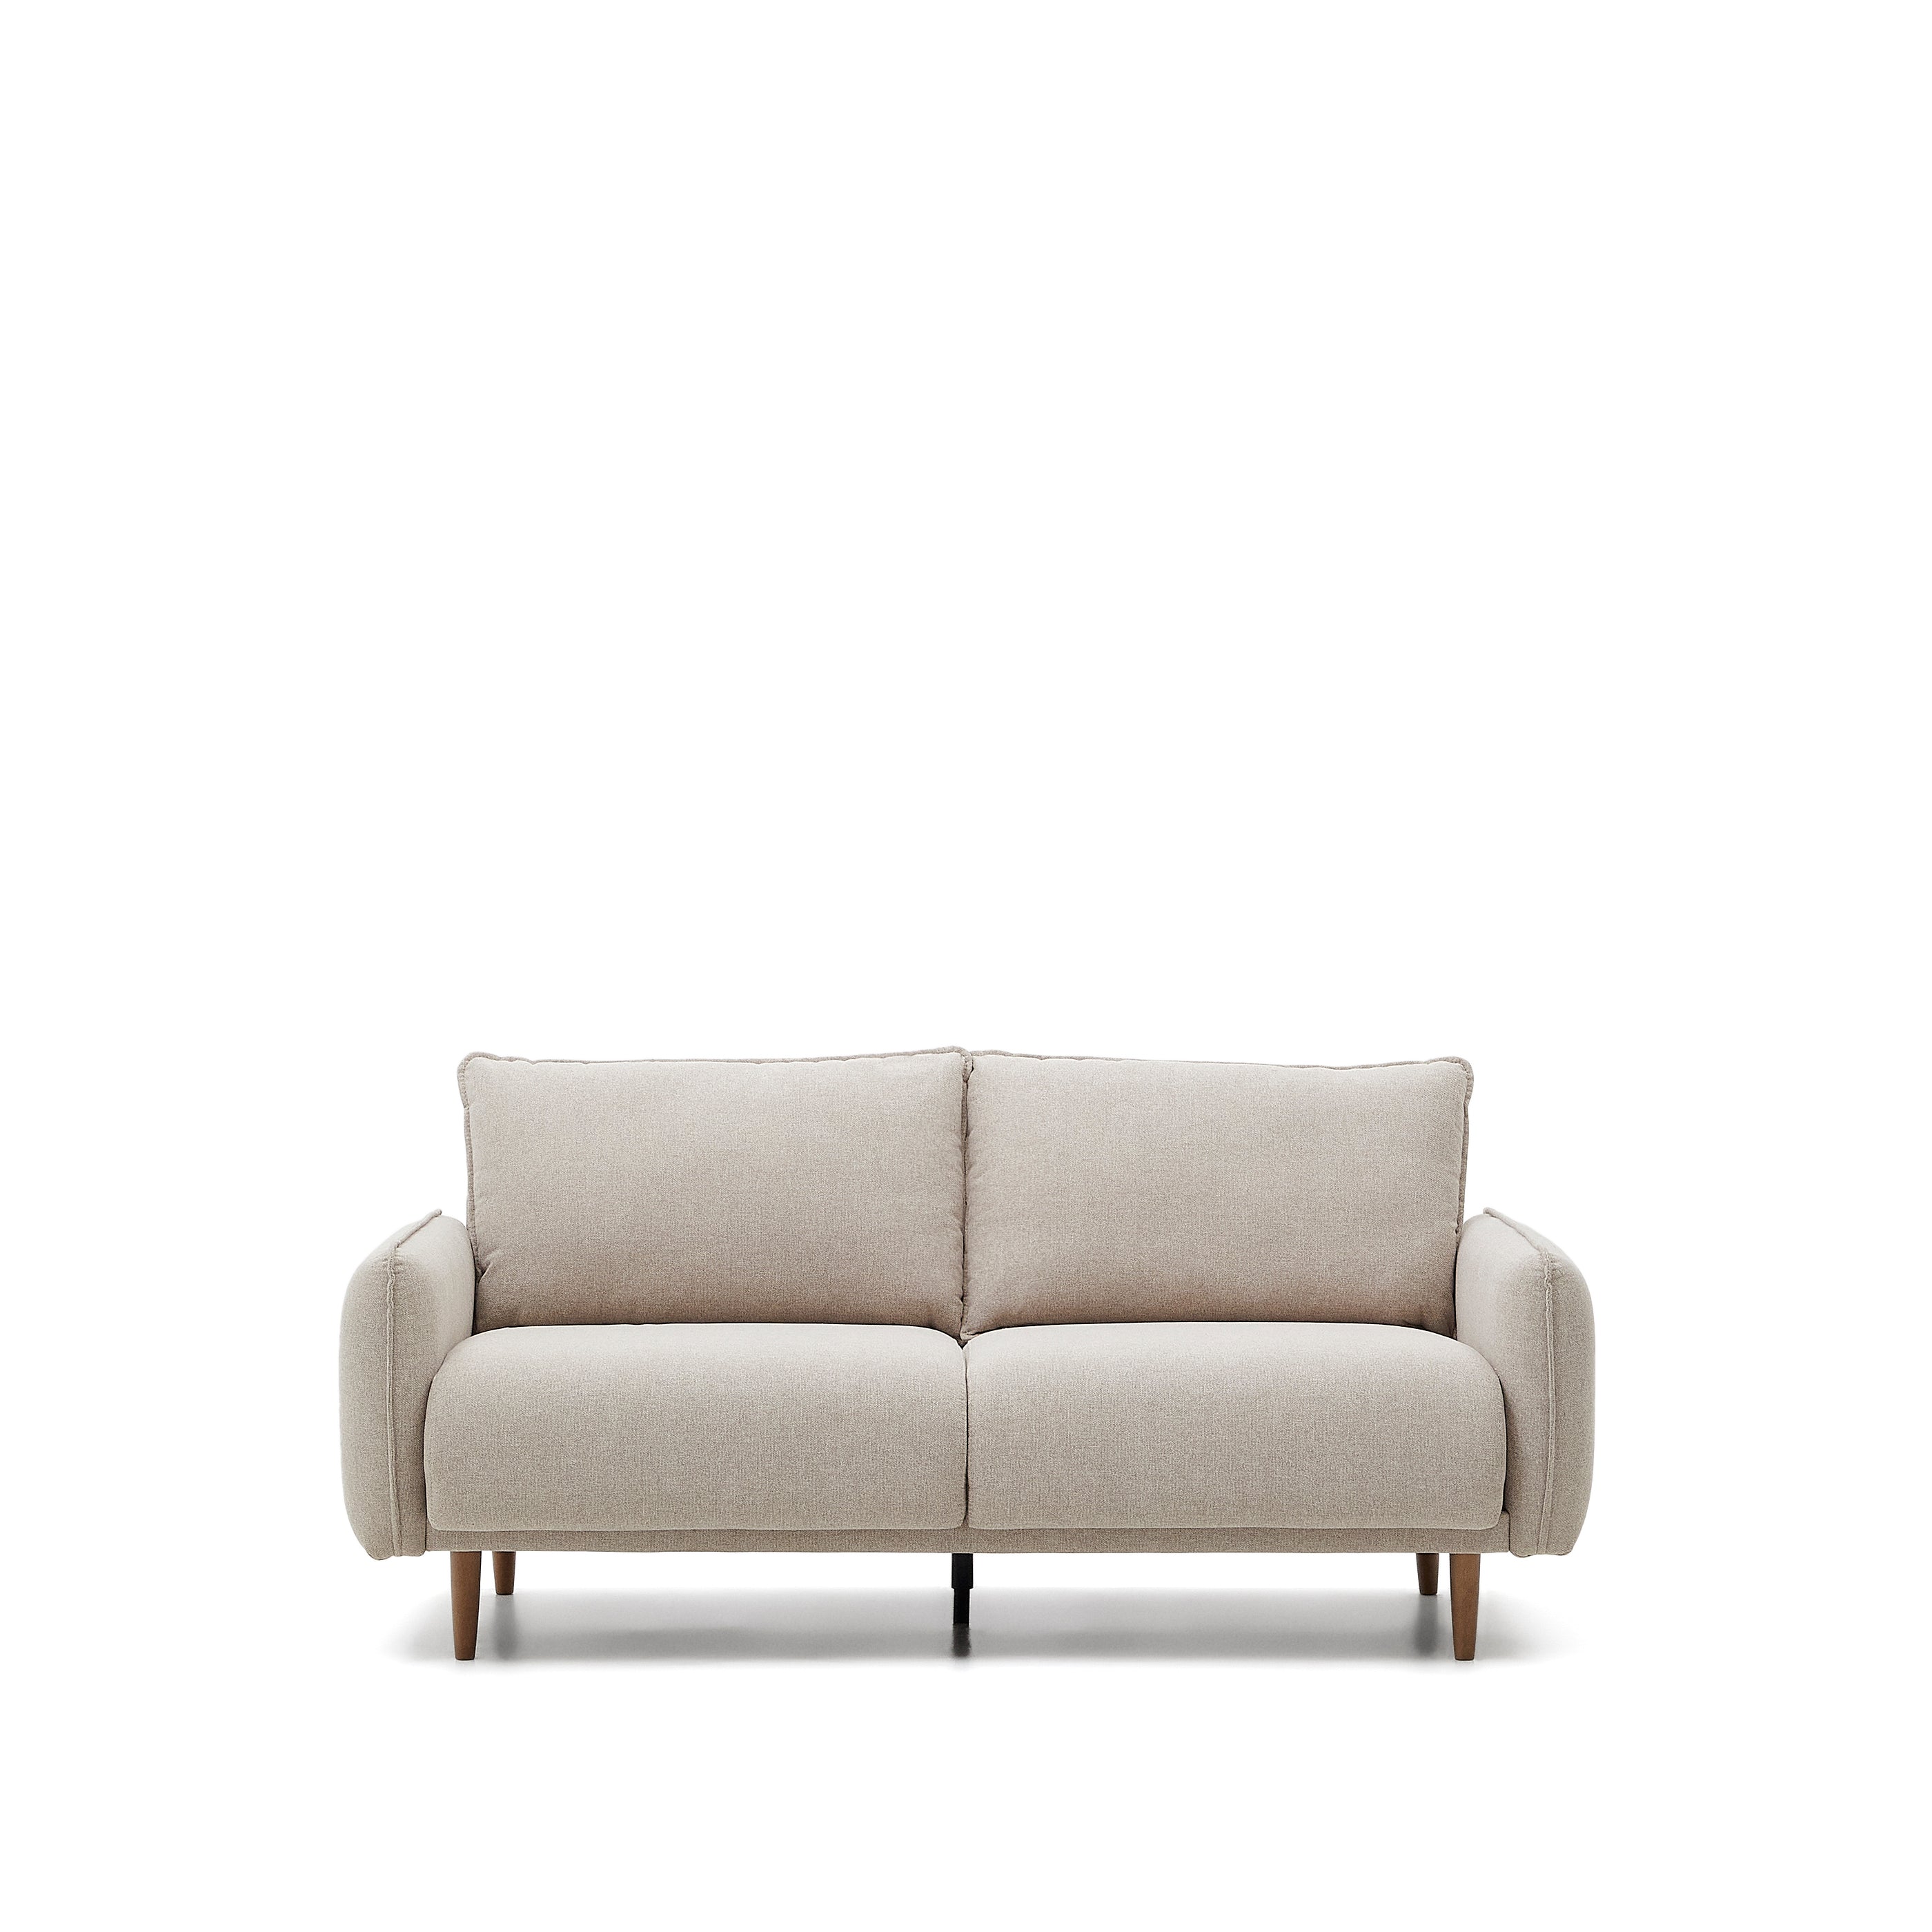 Carlota kétszemélyes kanapé bézs színben, 184 cm